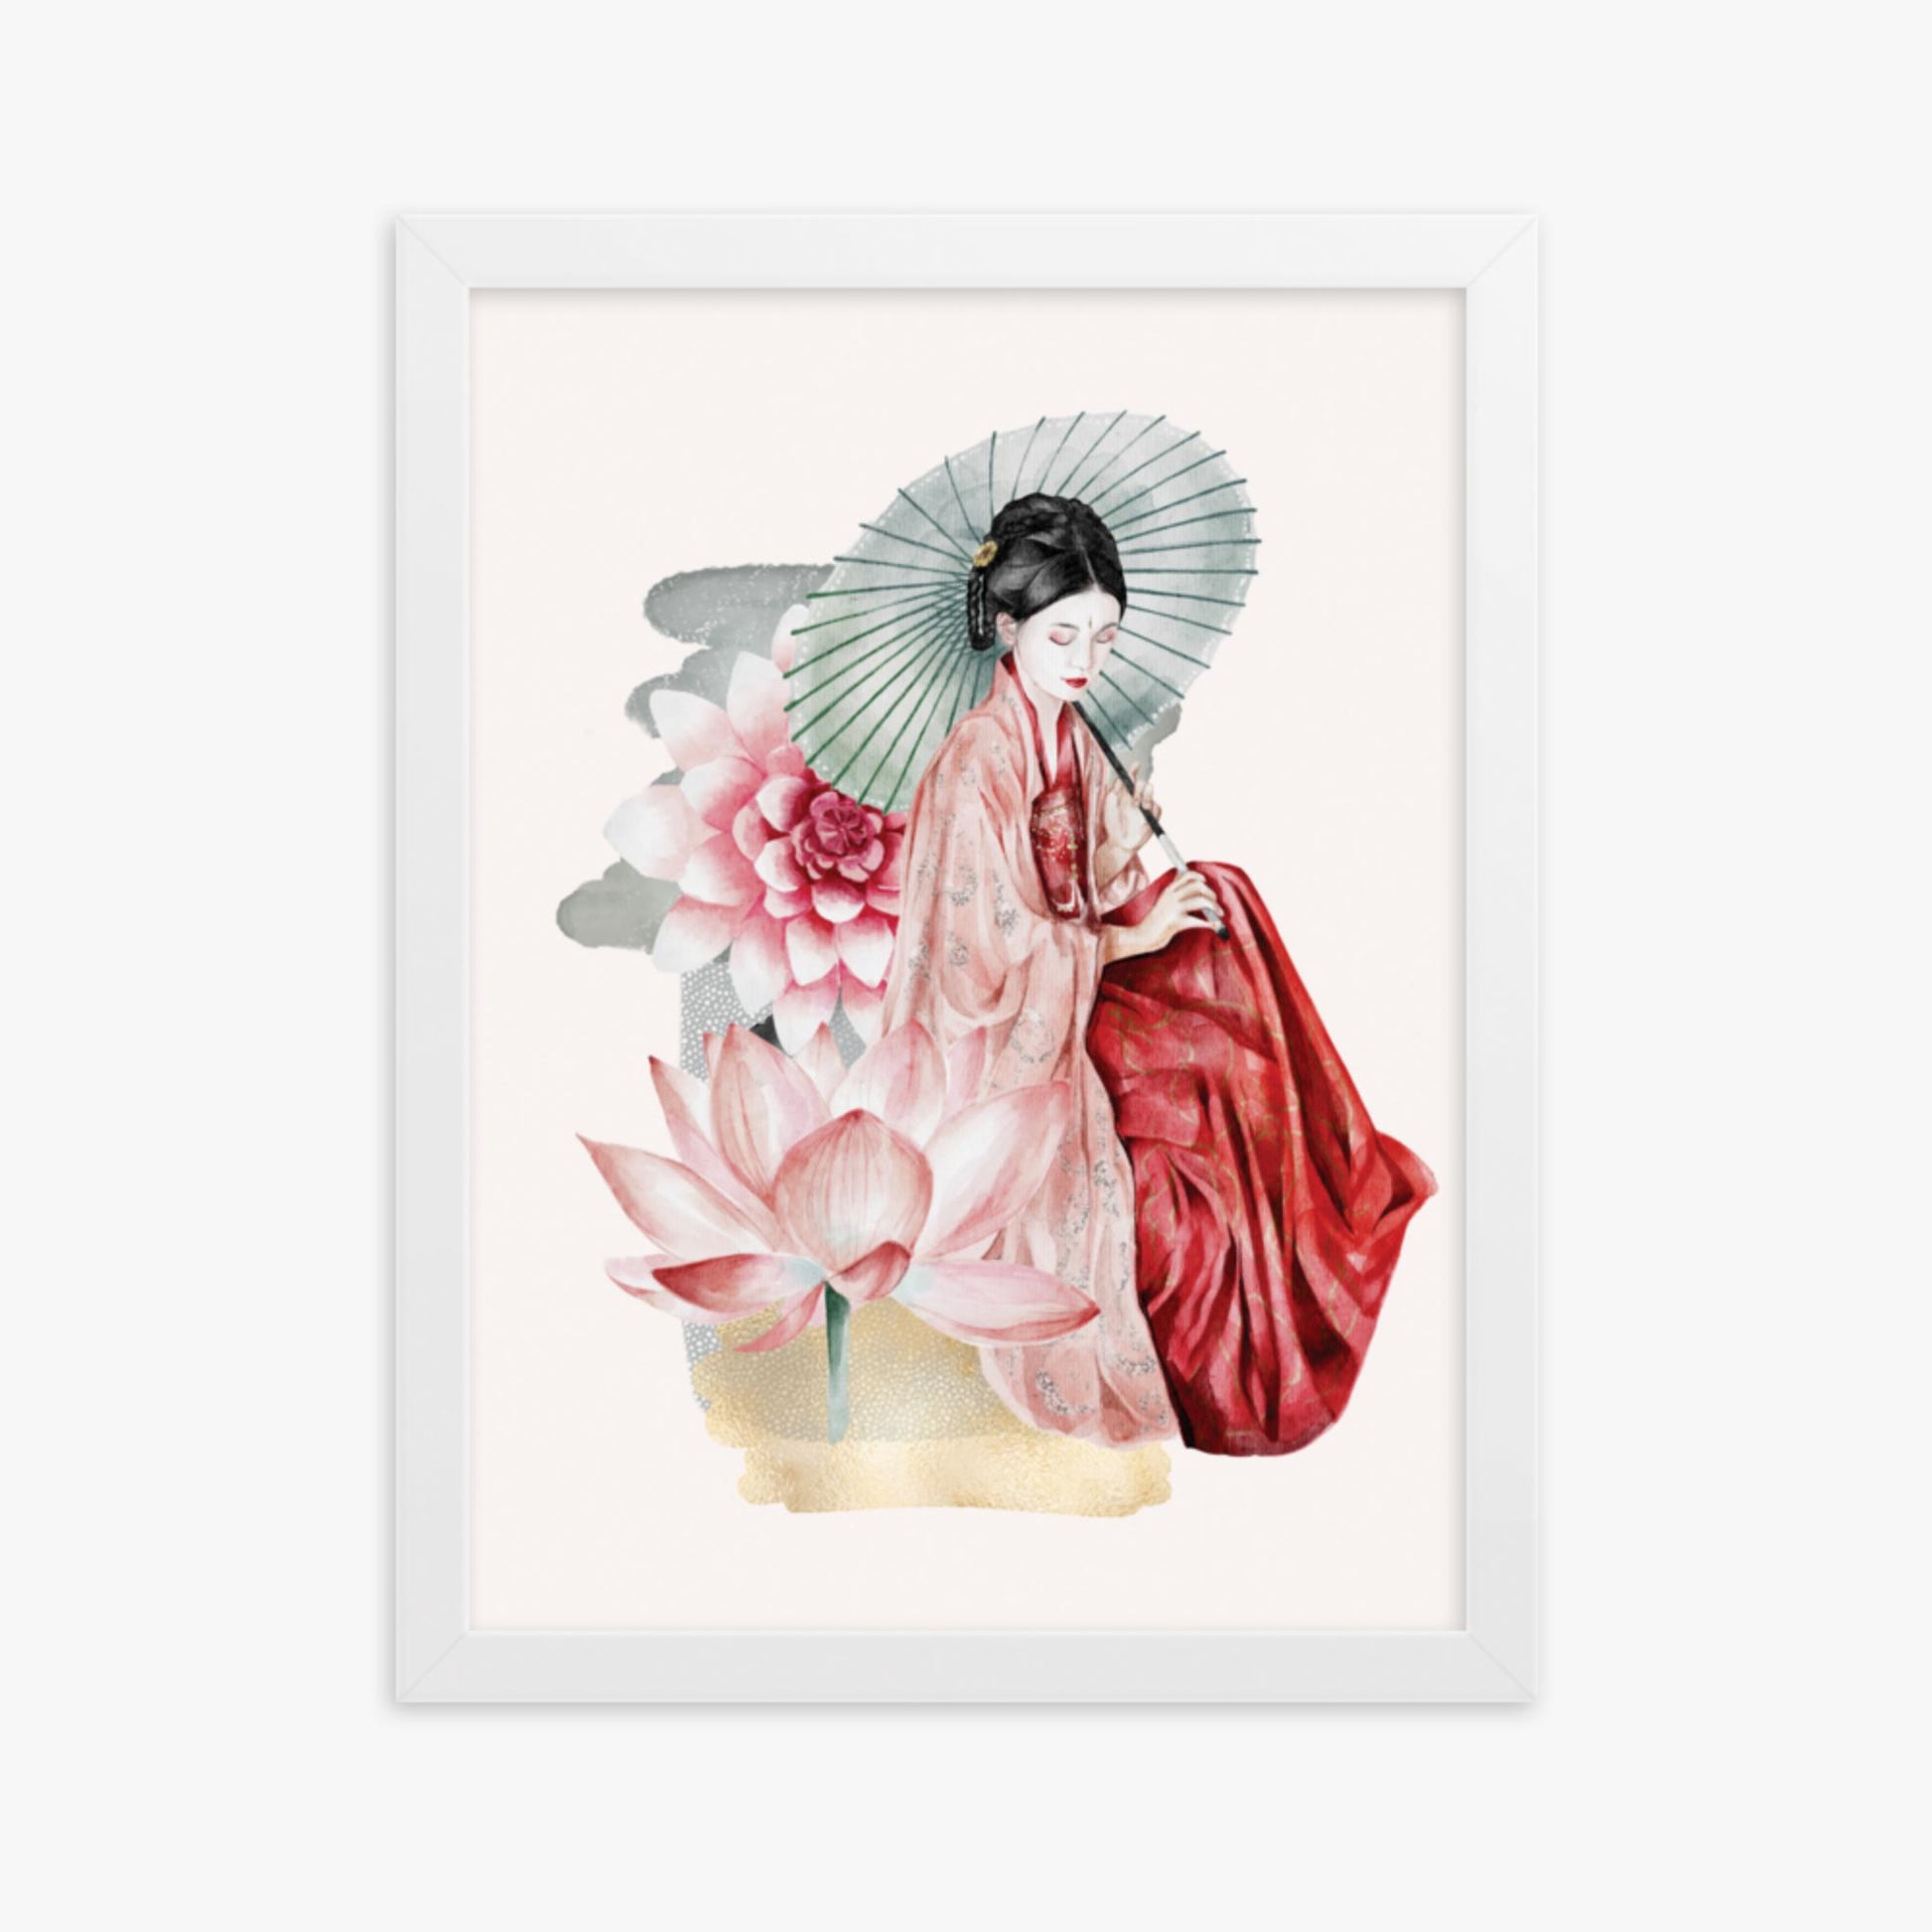 Modern illustration: Serenity 30x40 cm Poster With White Frame Frame